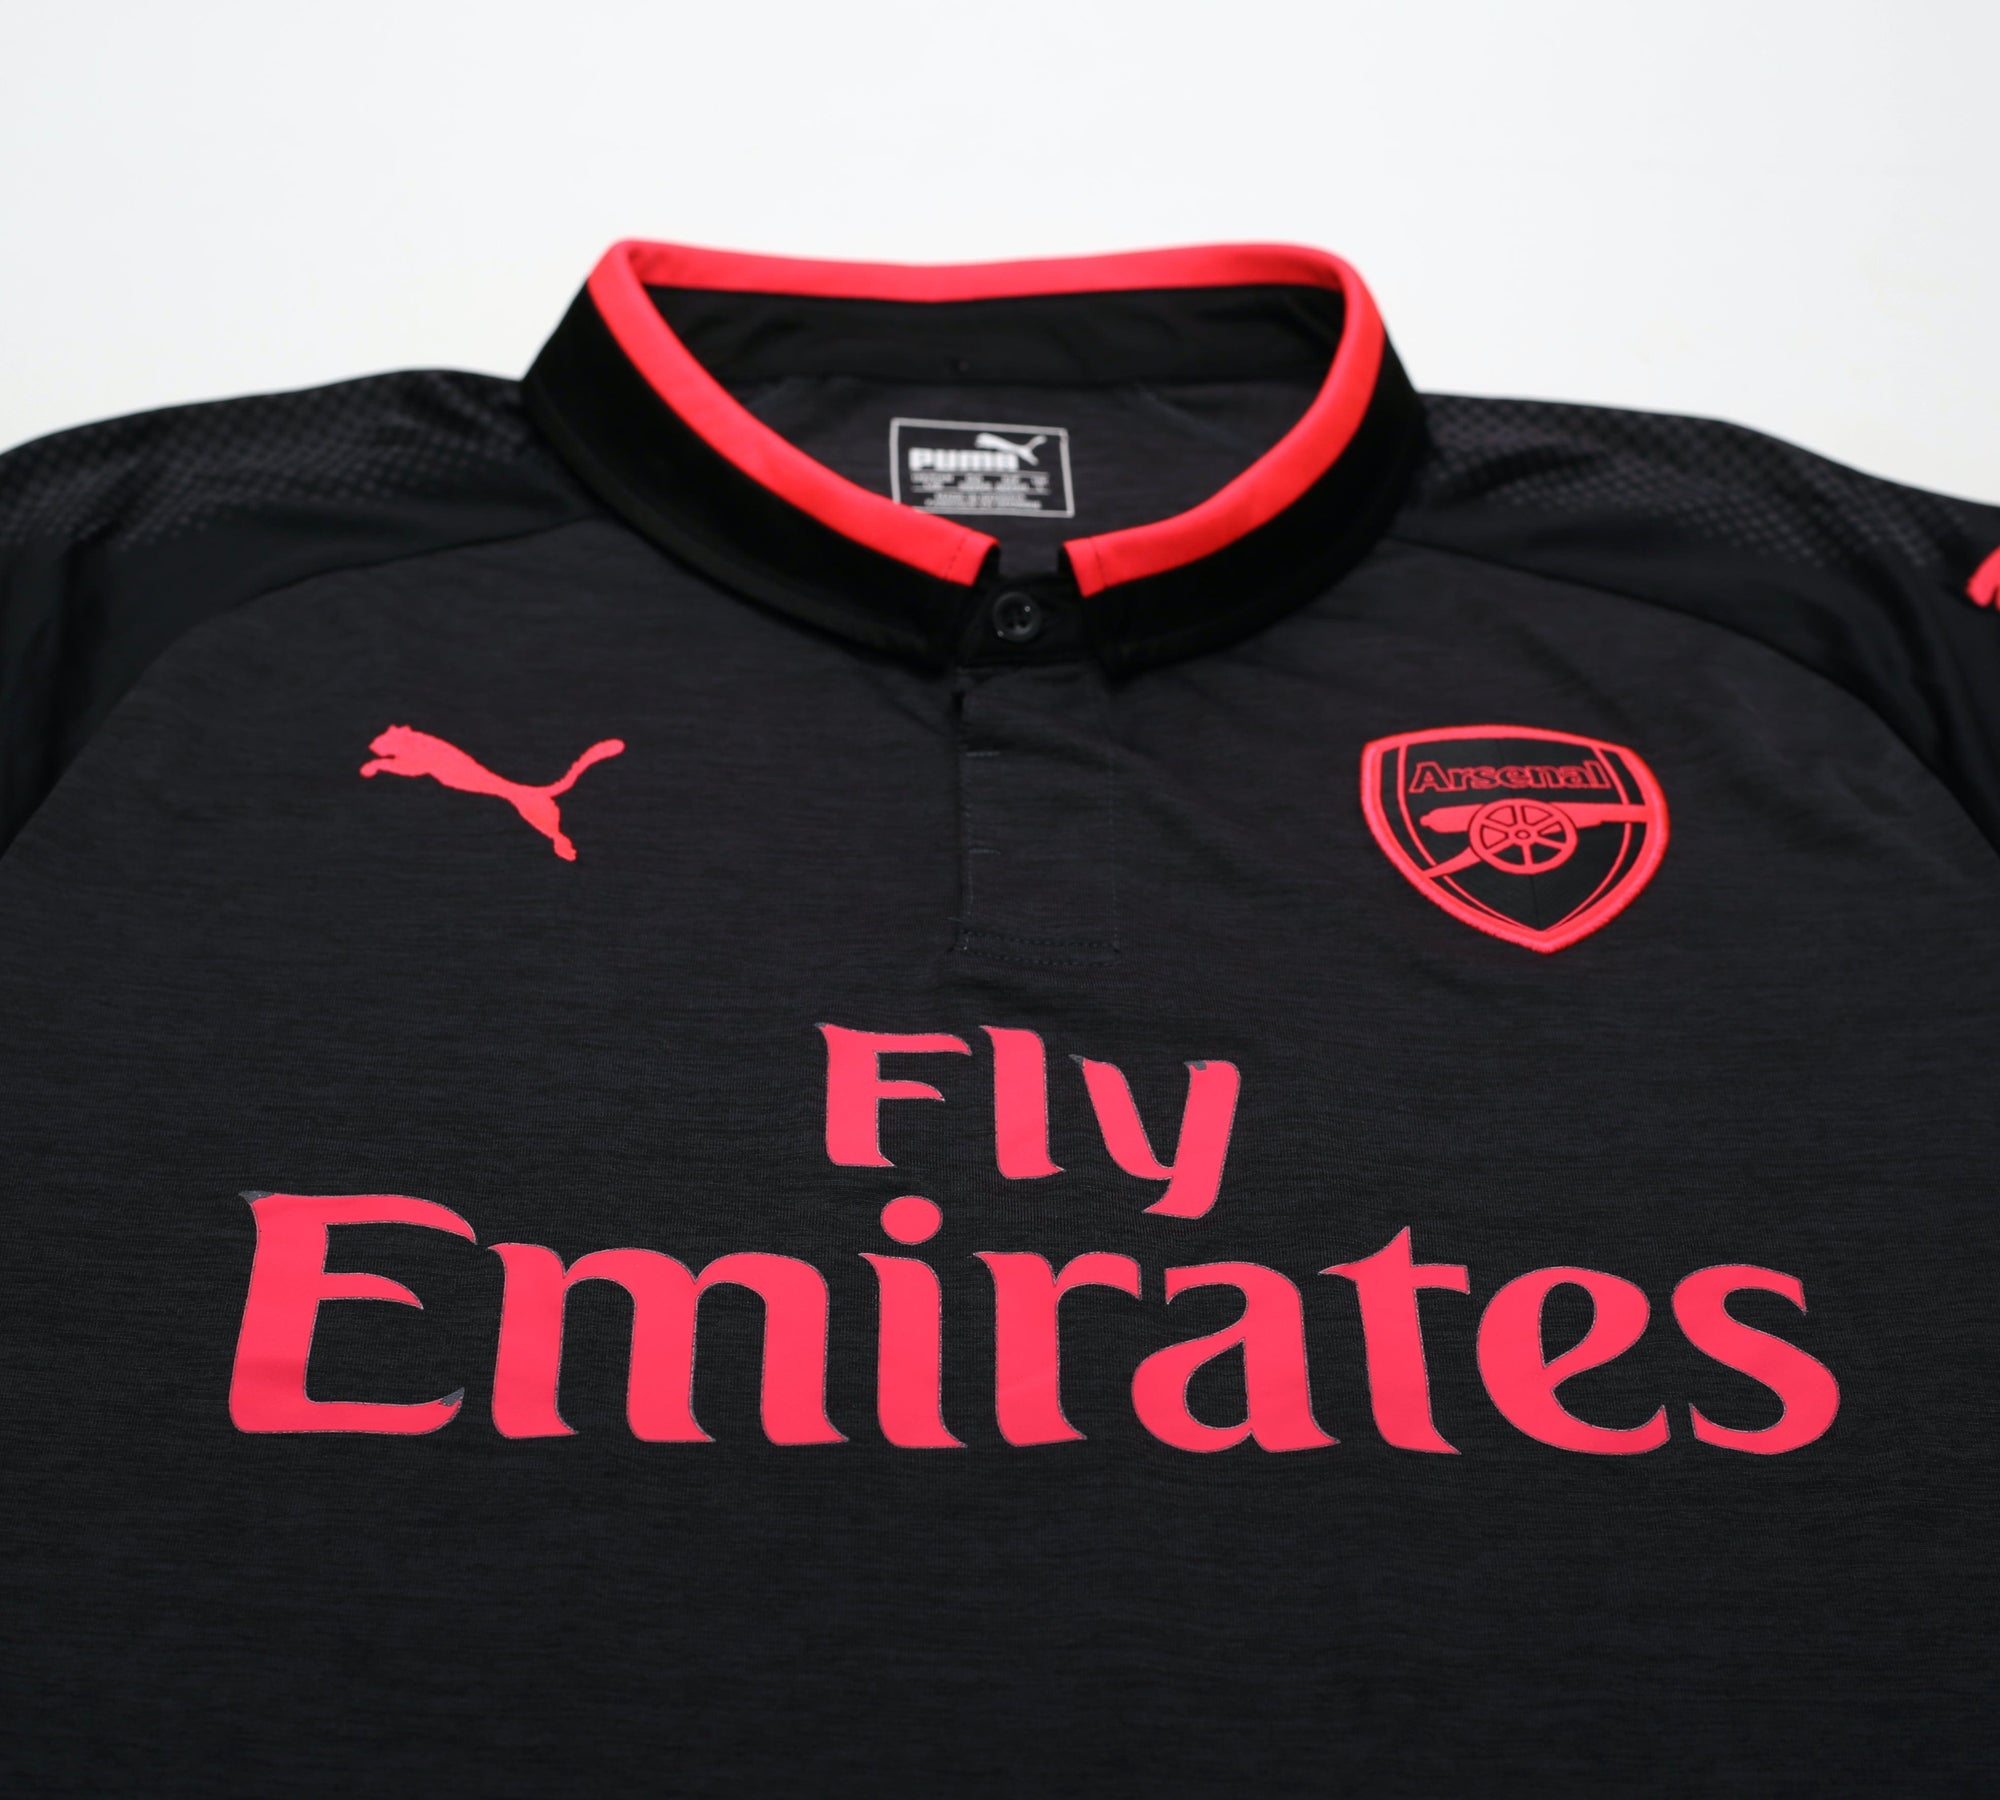 2017/18 OZIL #11 Arsenal Vintage PUMA Third Football Shirt (L)